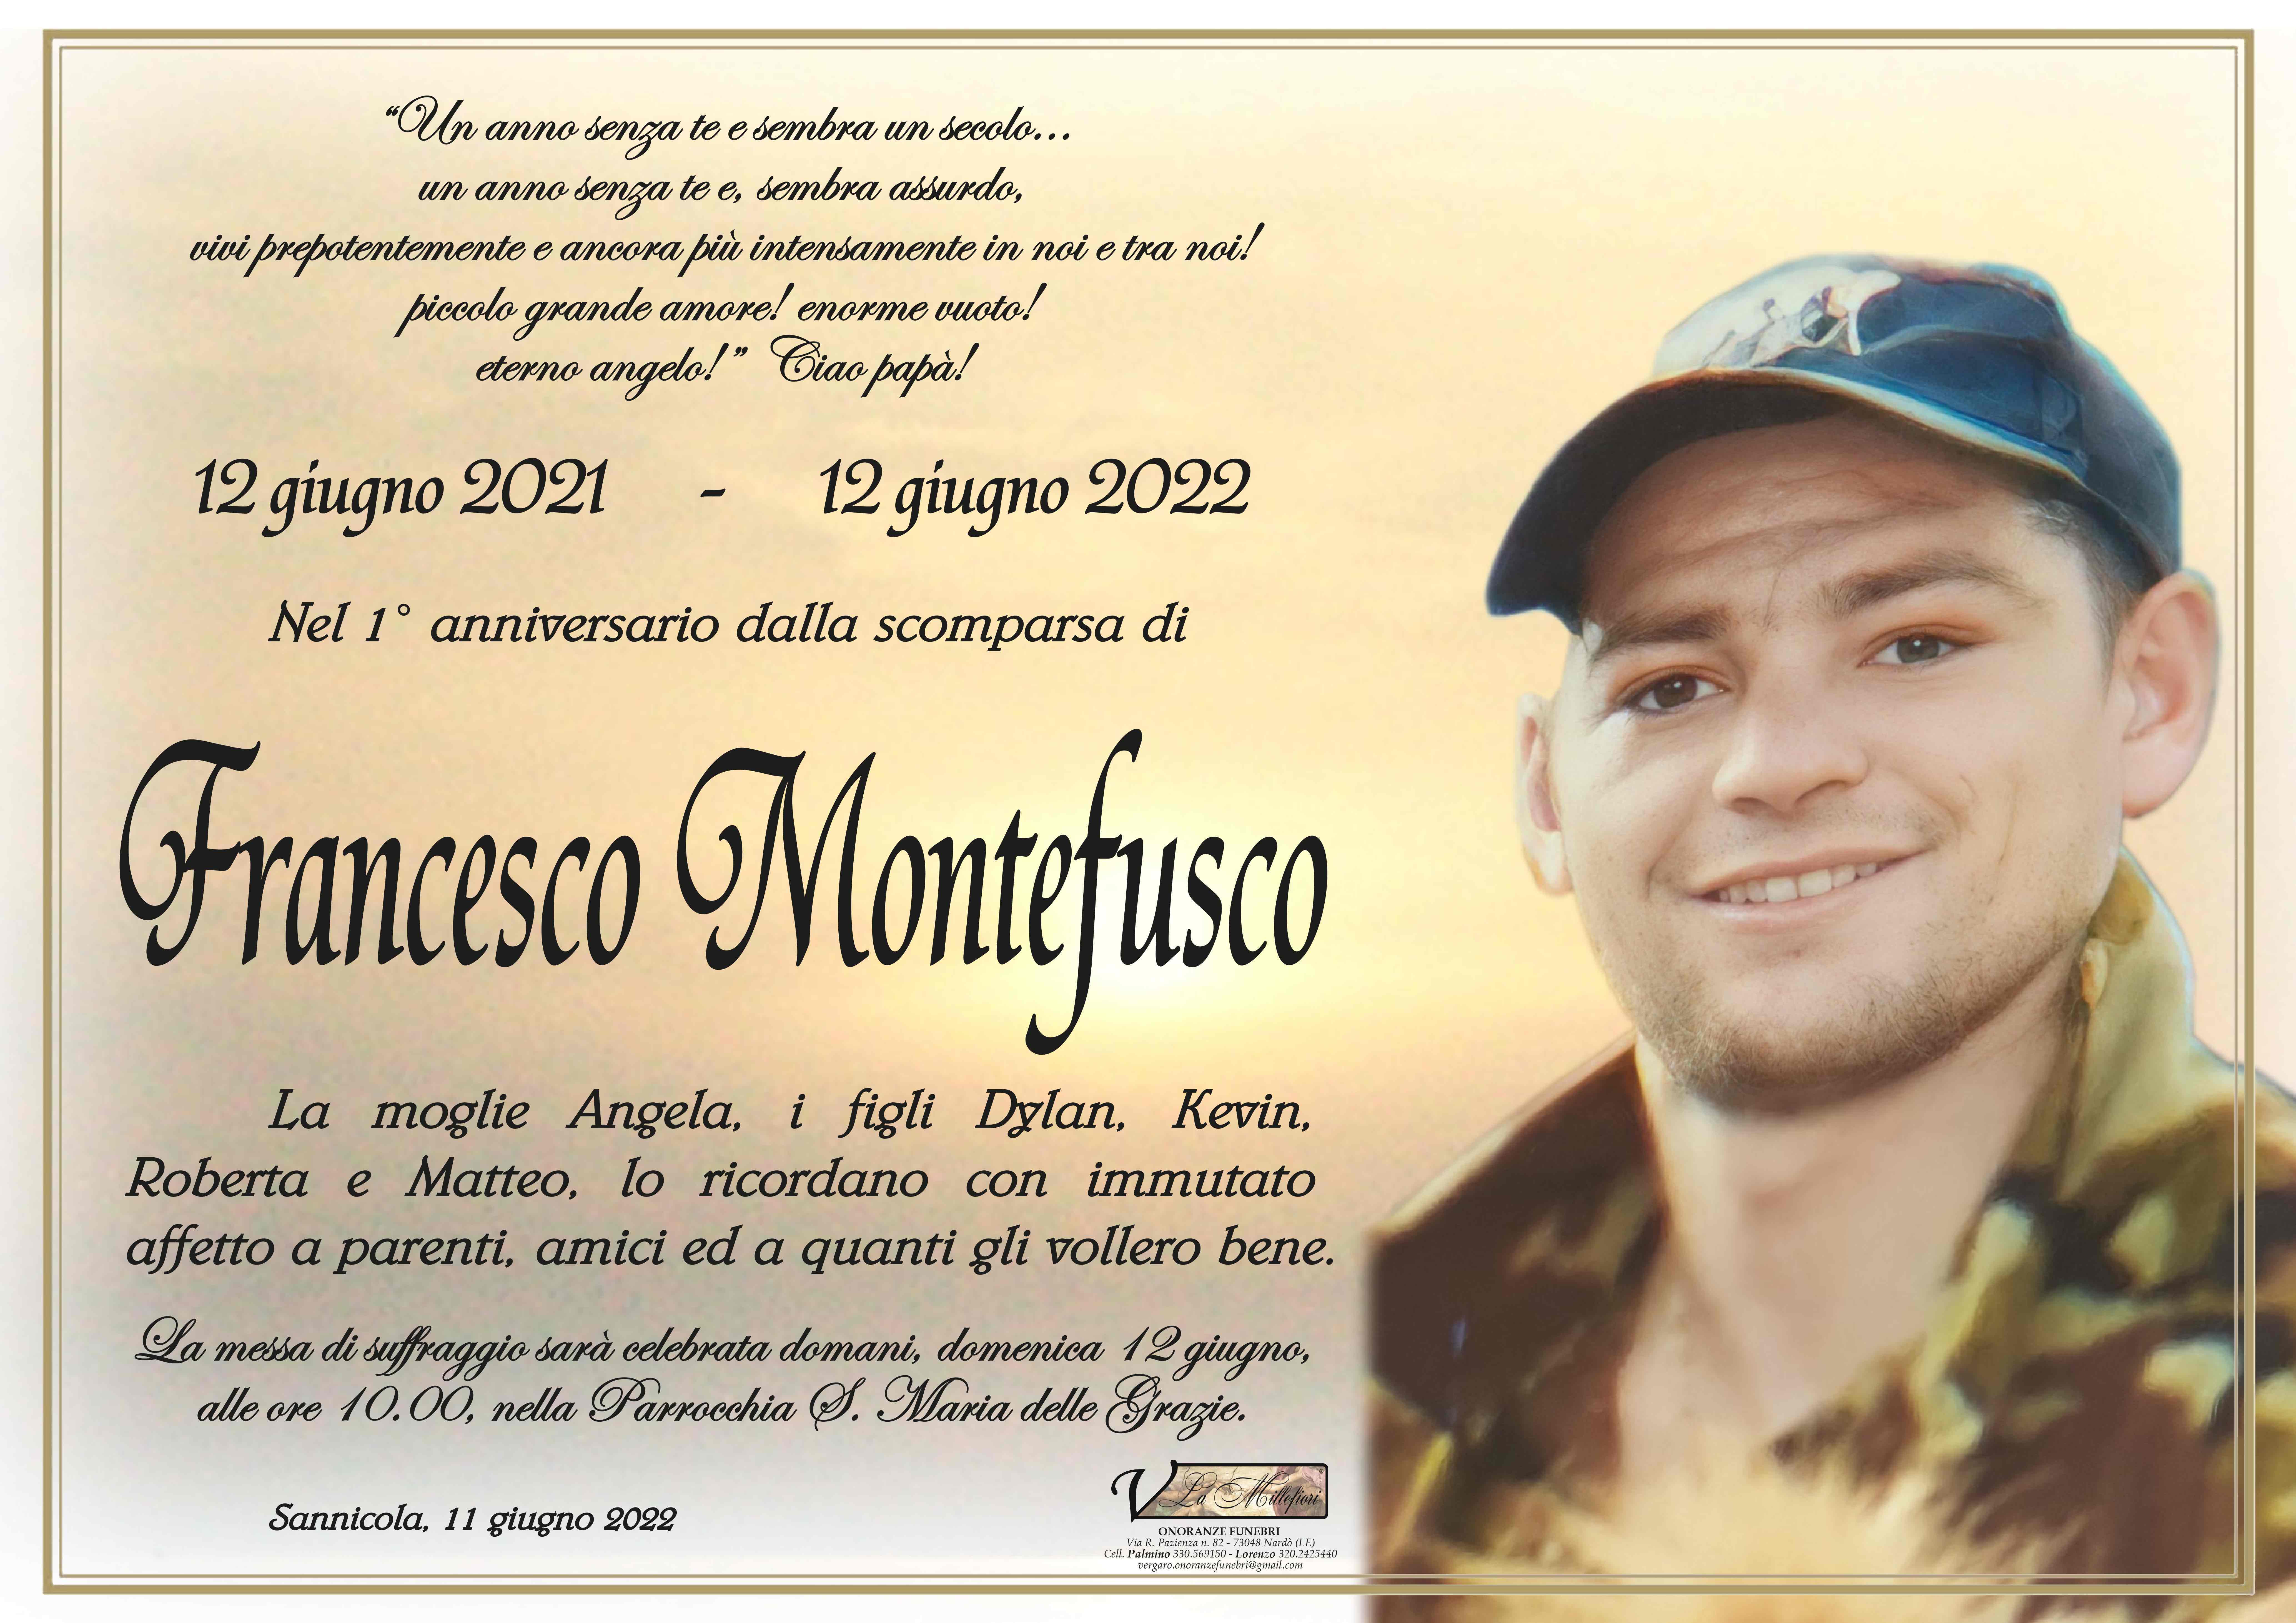 Francesco Montefusco